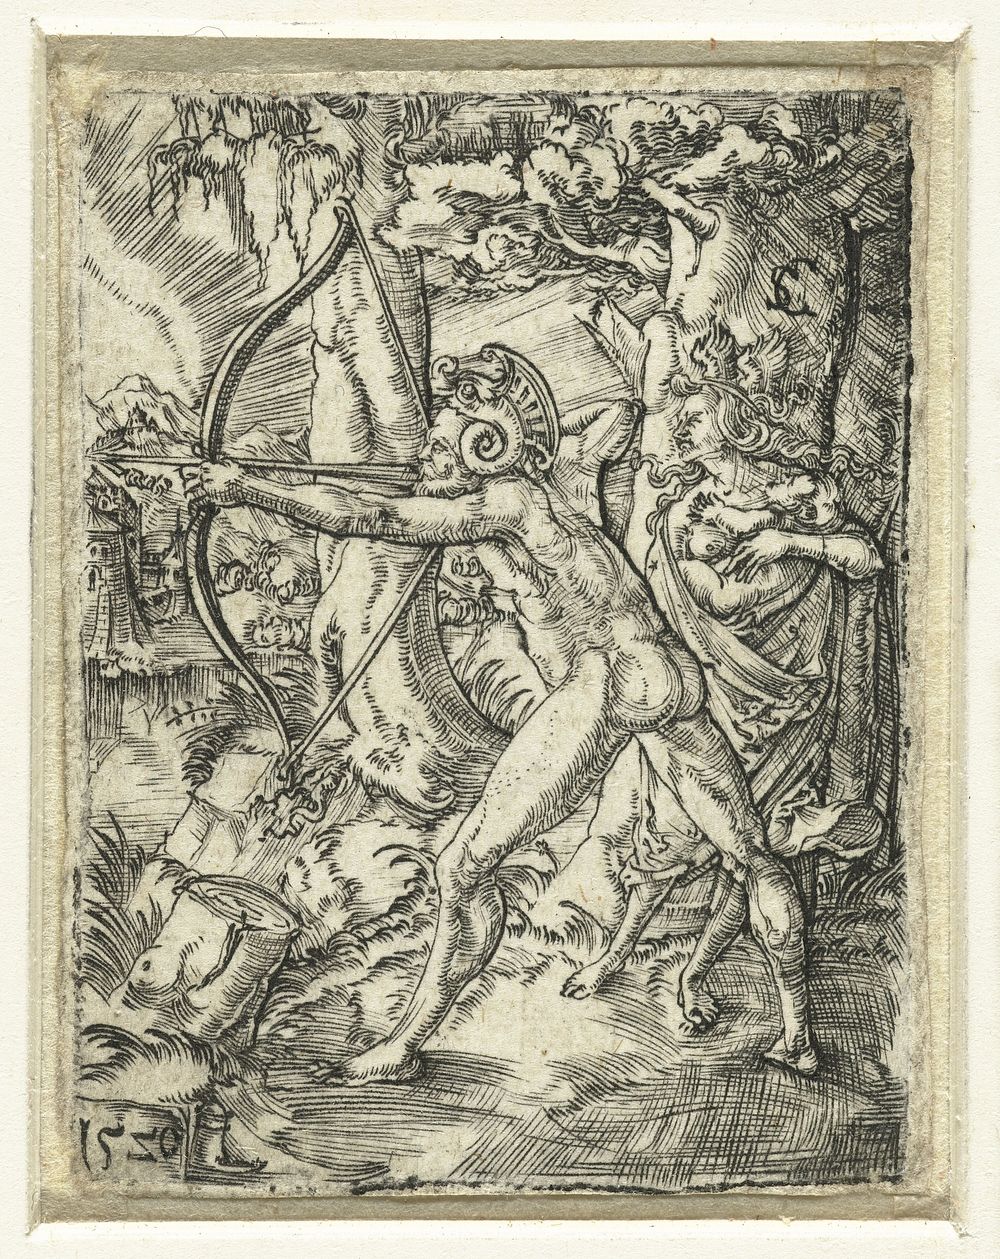 De wilden (1520) by Monogrammist SC graveur